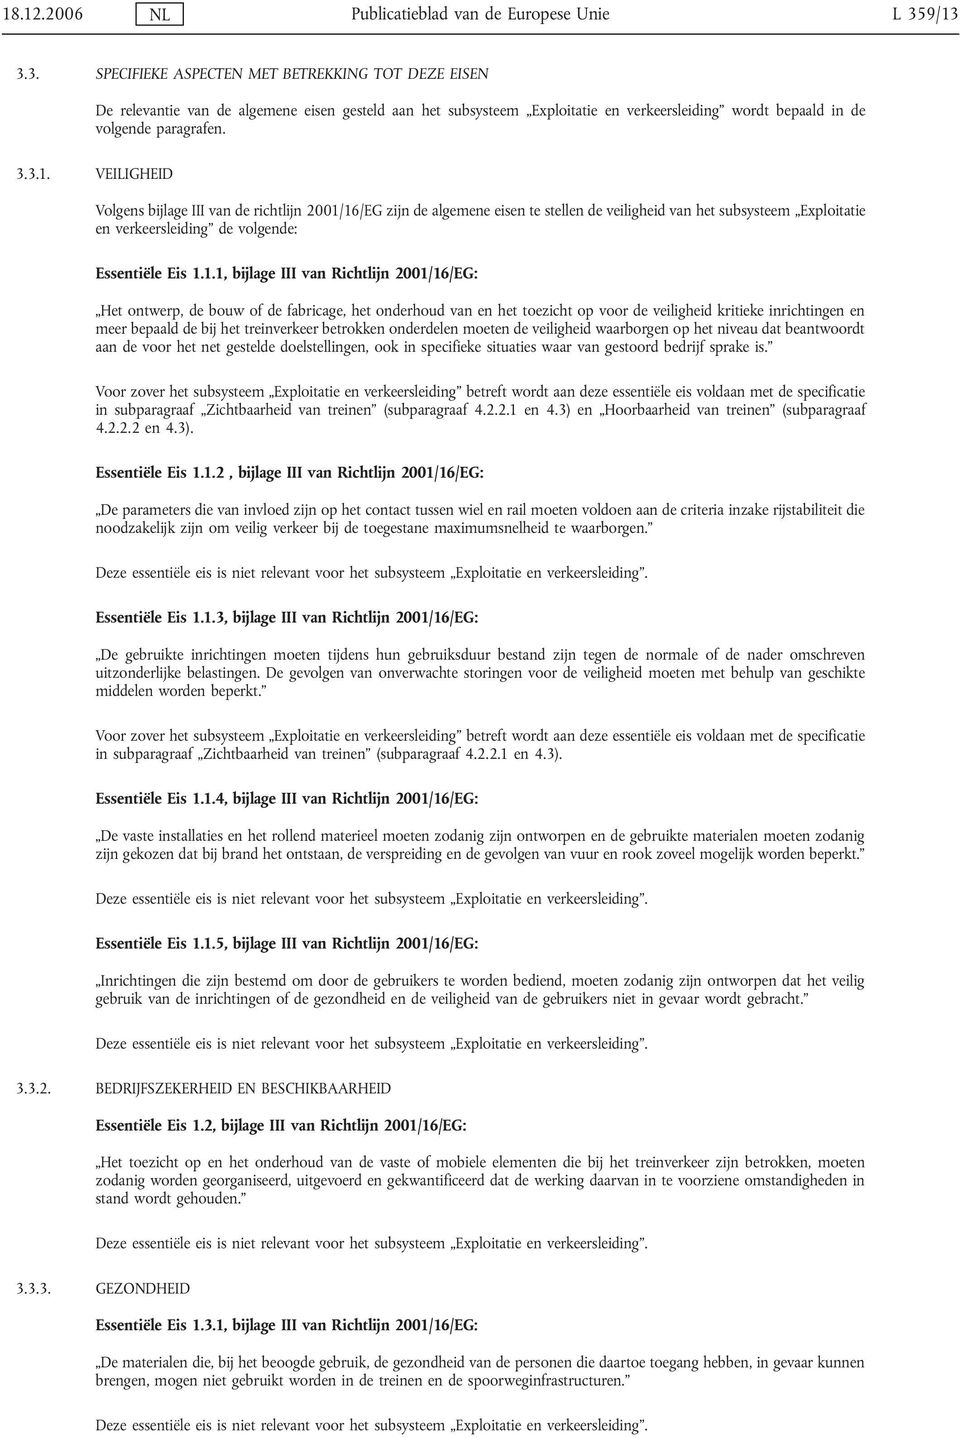 1.1, bijlage III van Richtlijn 2001/16/EG: Het ontwerp, de bouw of de fabricage, het onderhoud van en het toezicht op voor de veiligheid kritieke inrichtingen en meer bepaald de bij het treinverkeer